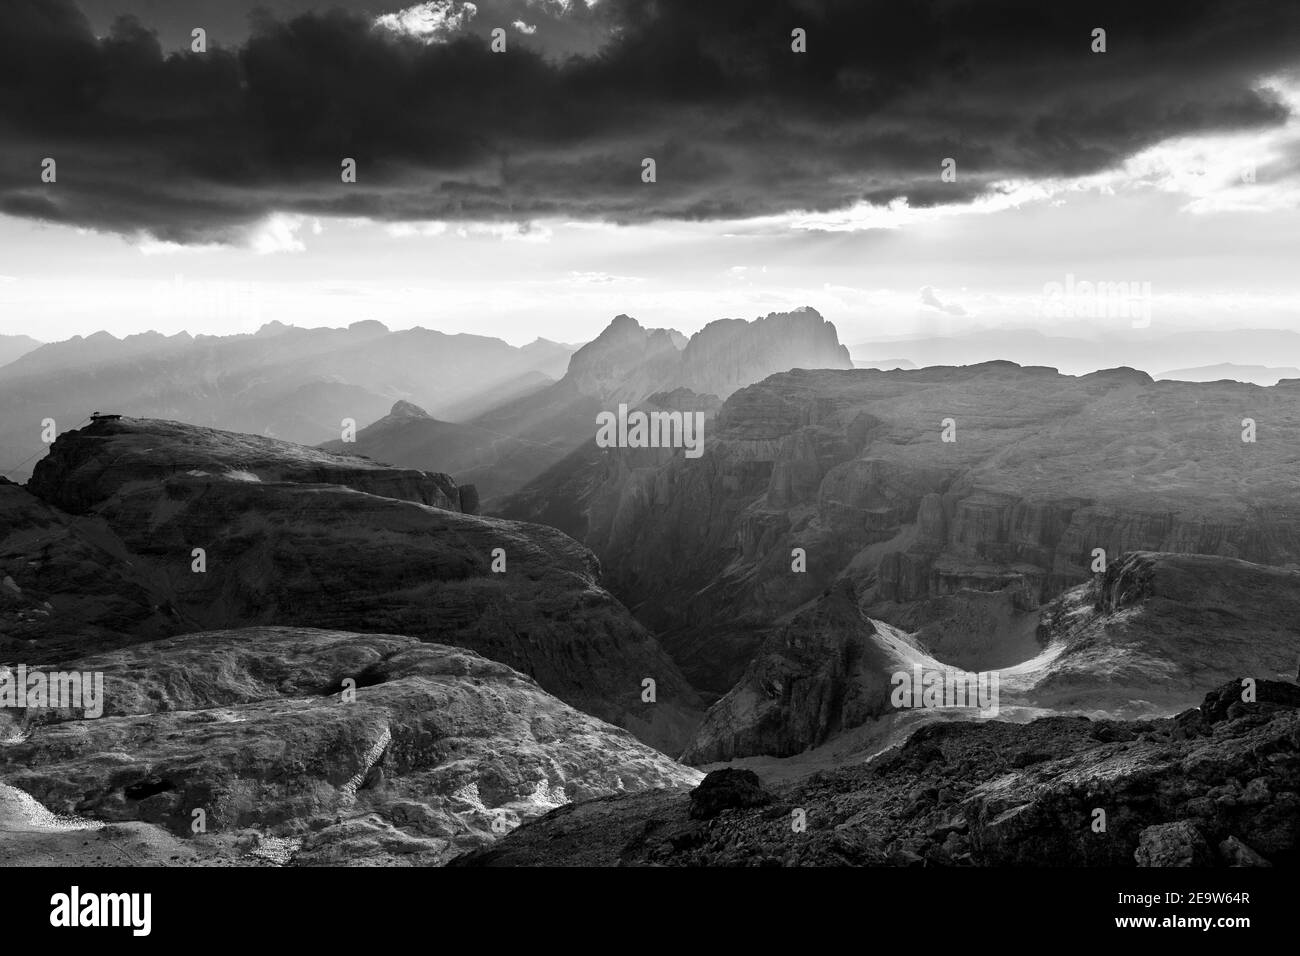 Dramatischer Wolkenhimmel, Sonnenlicht st Sonnenuntergang auf der Sellagruppe. Die Dolomiten. Italienische Alpen. Schwarz weiße Berglandschaft. Stockfoto